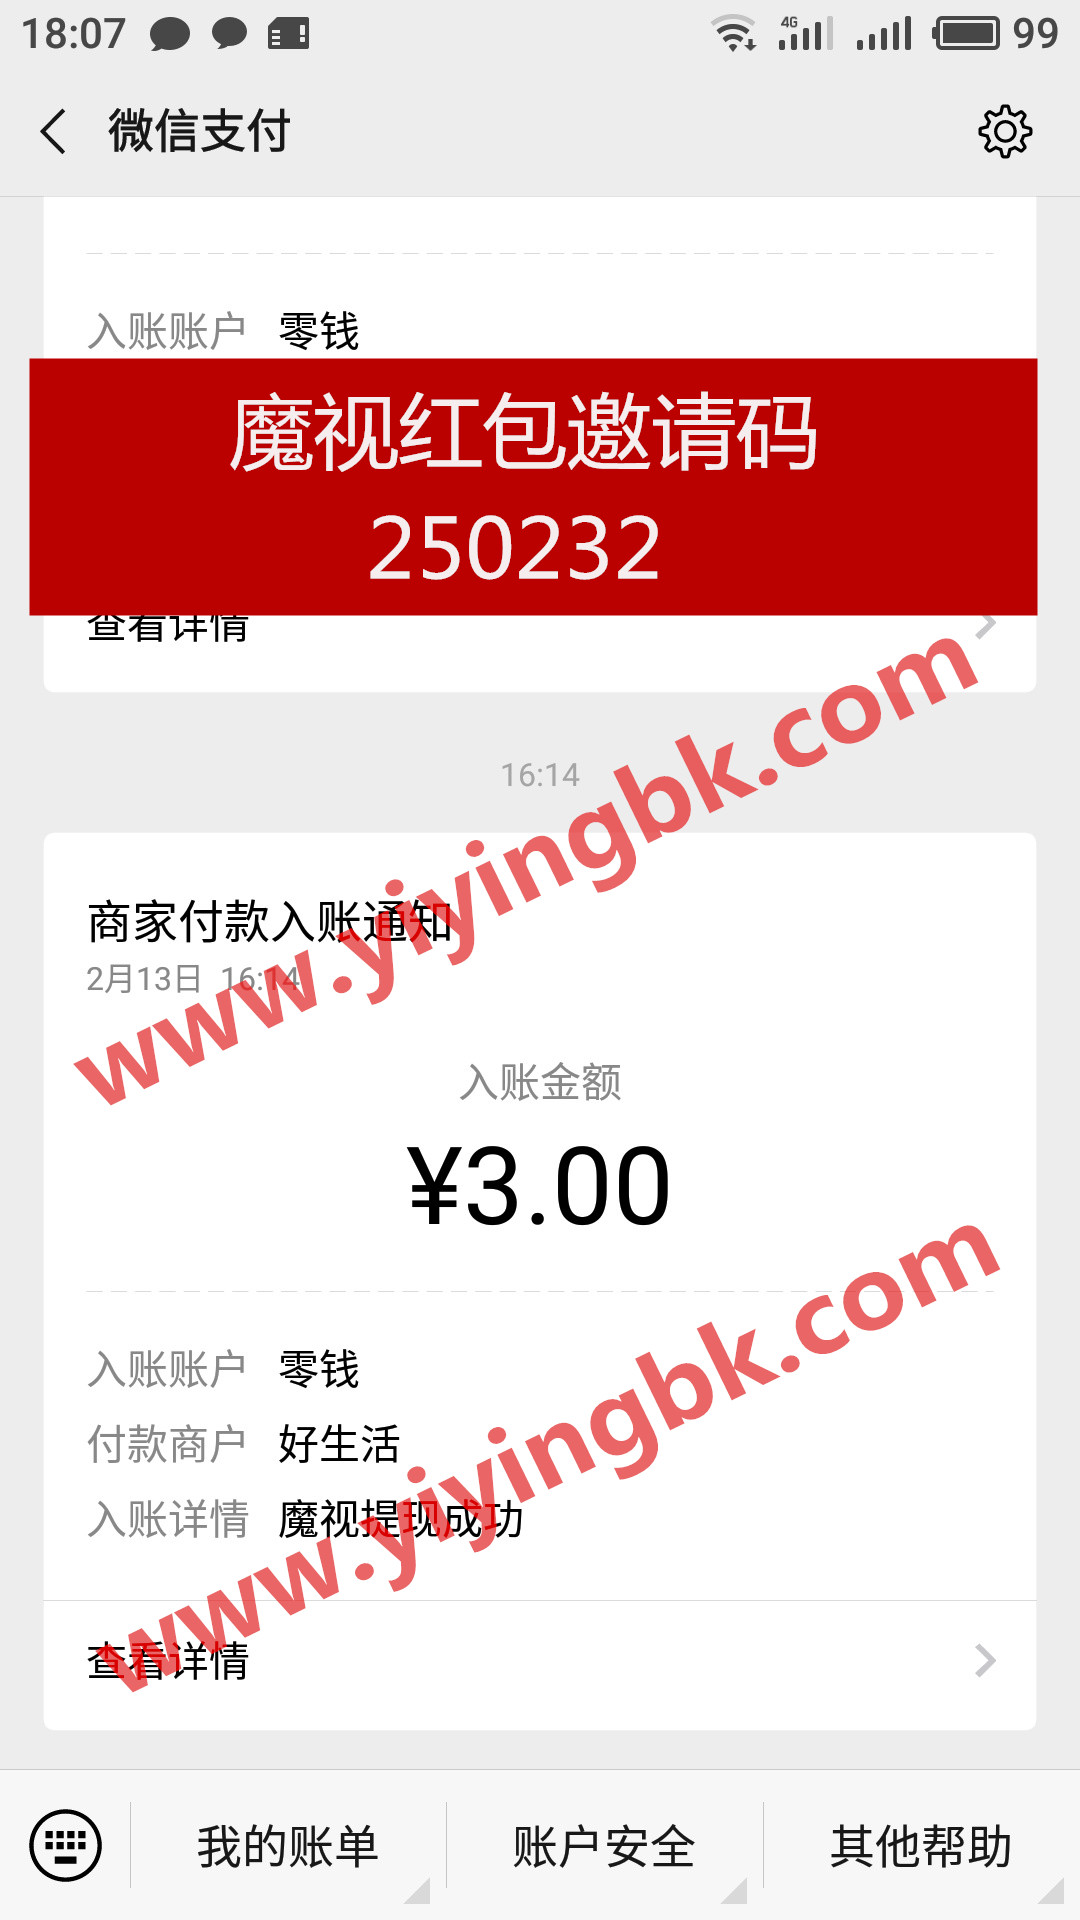 魔视看视频领红包赚零花钱，微信提现3元快速到账。www.yiyingbk.com